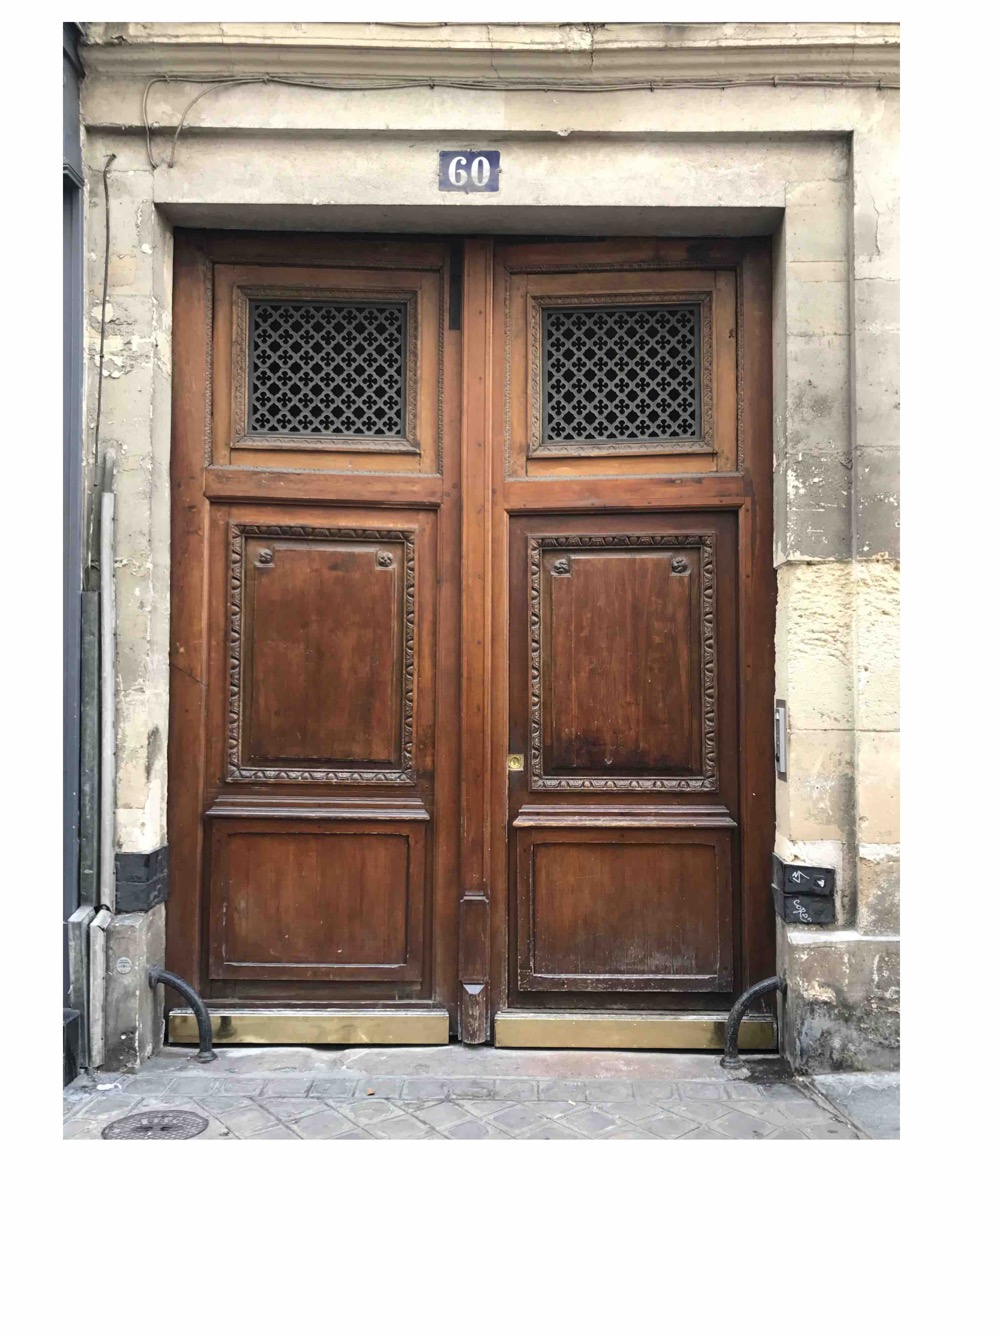 Porte Cochère Style Restauration - 60 RUE CHARLOT PARIS 3